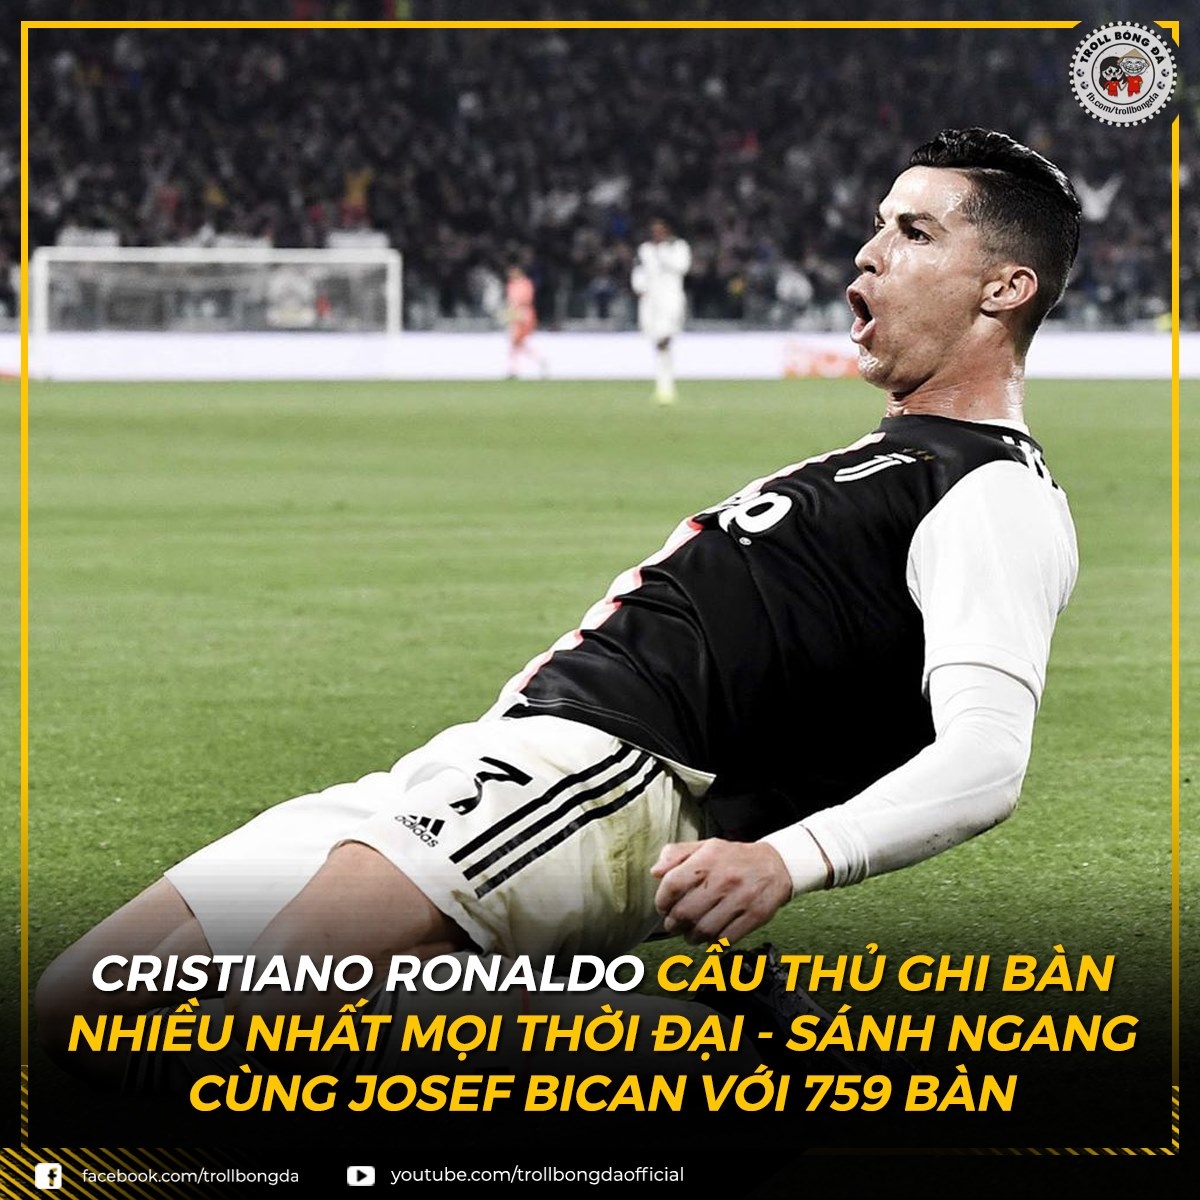 Biếm họa 24h: Không ai cản nổi Ronaldo | VOV.VN